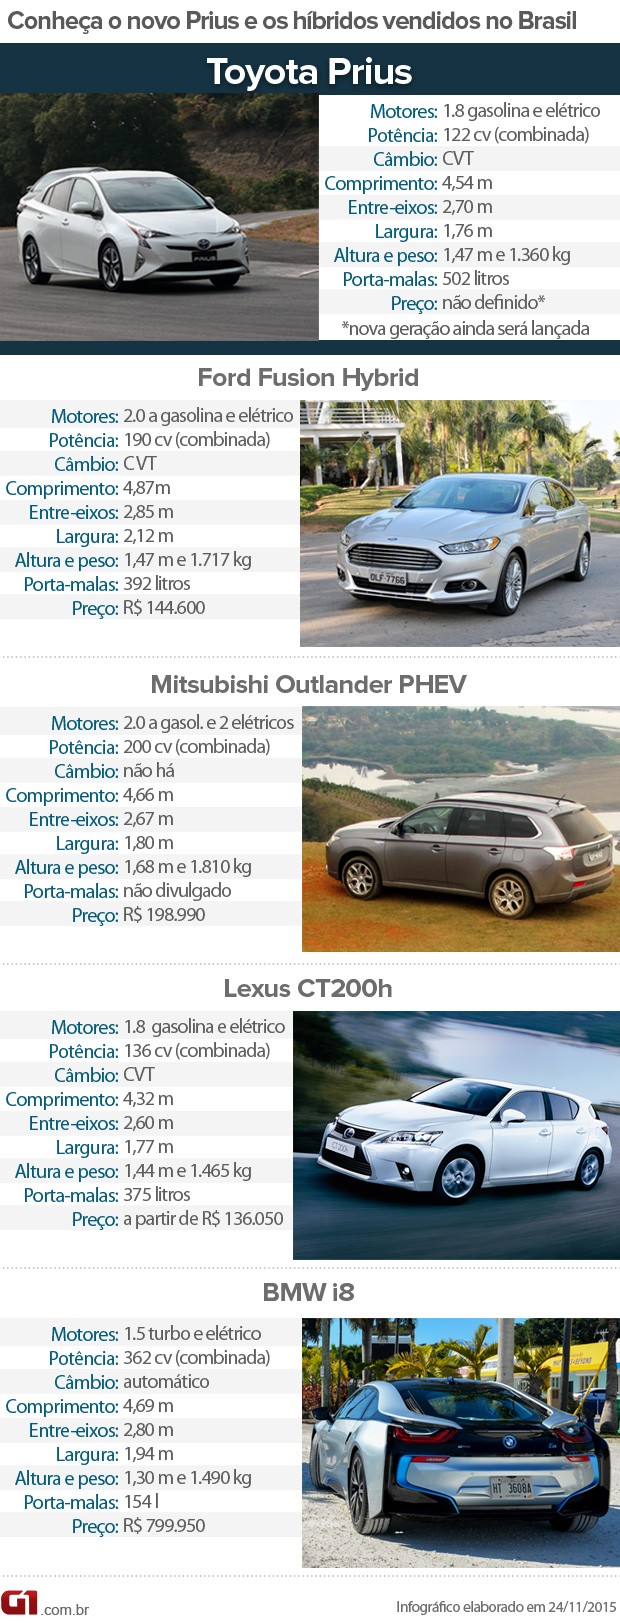 Conheça o novo Toyota Prius e híbridos vendidos no Brasil (Foto: G1)